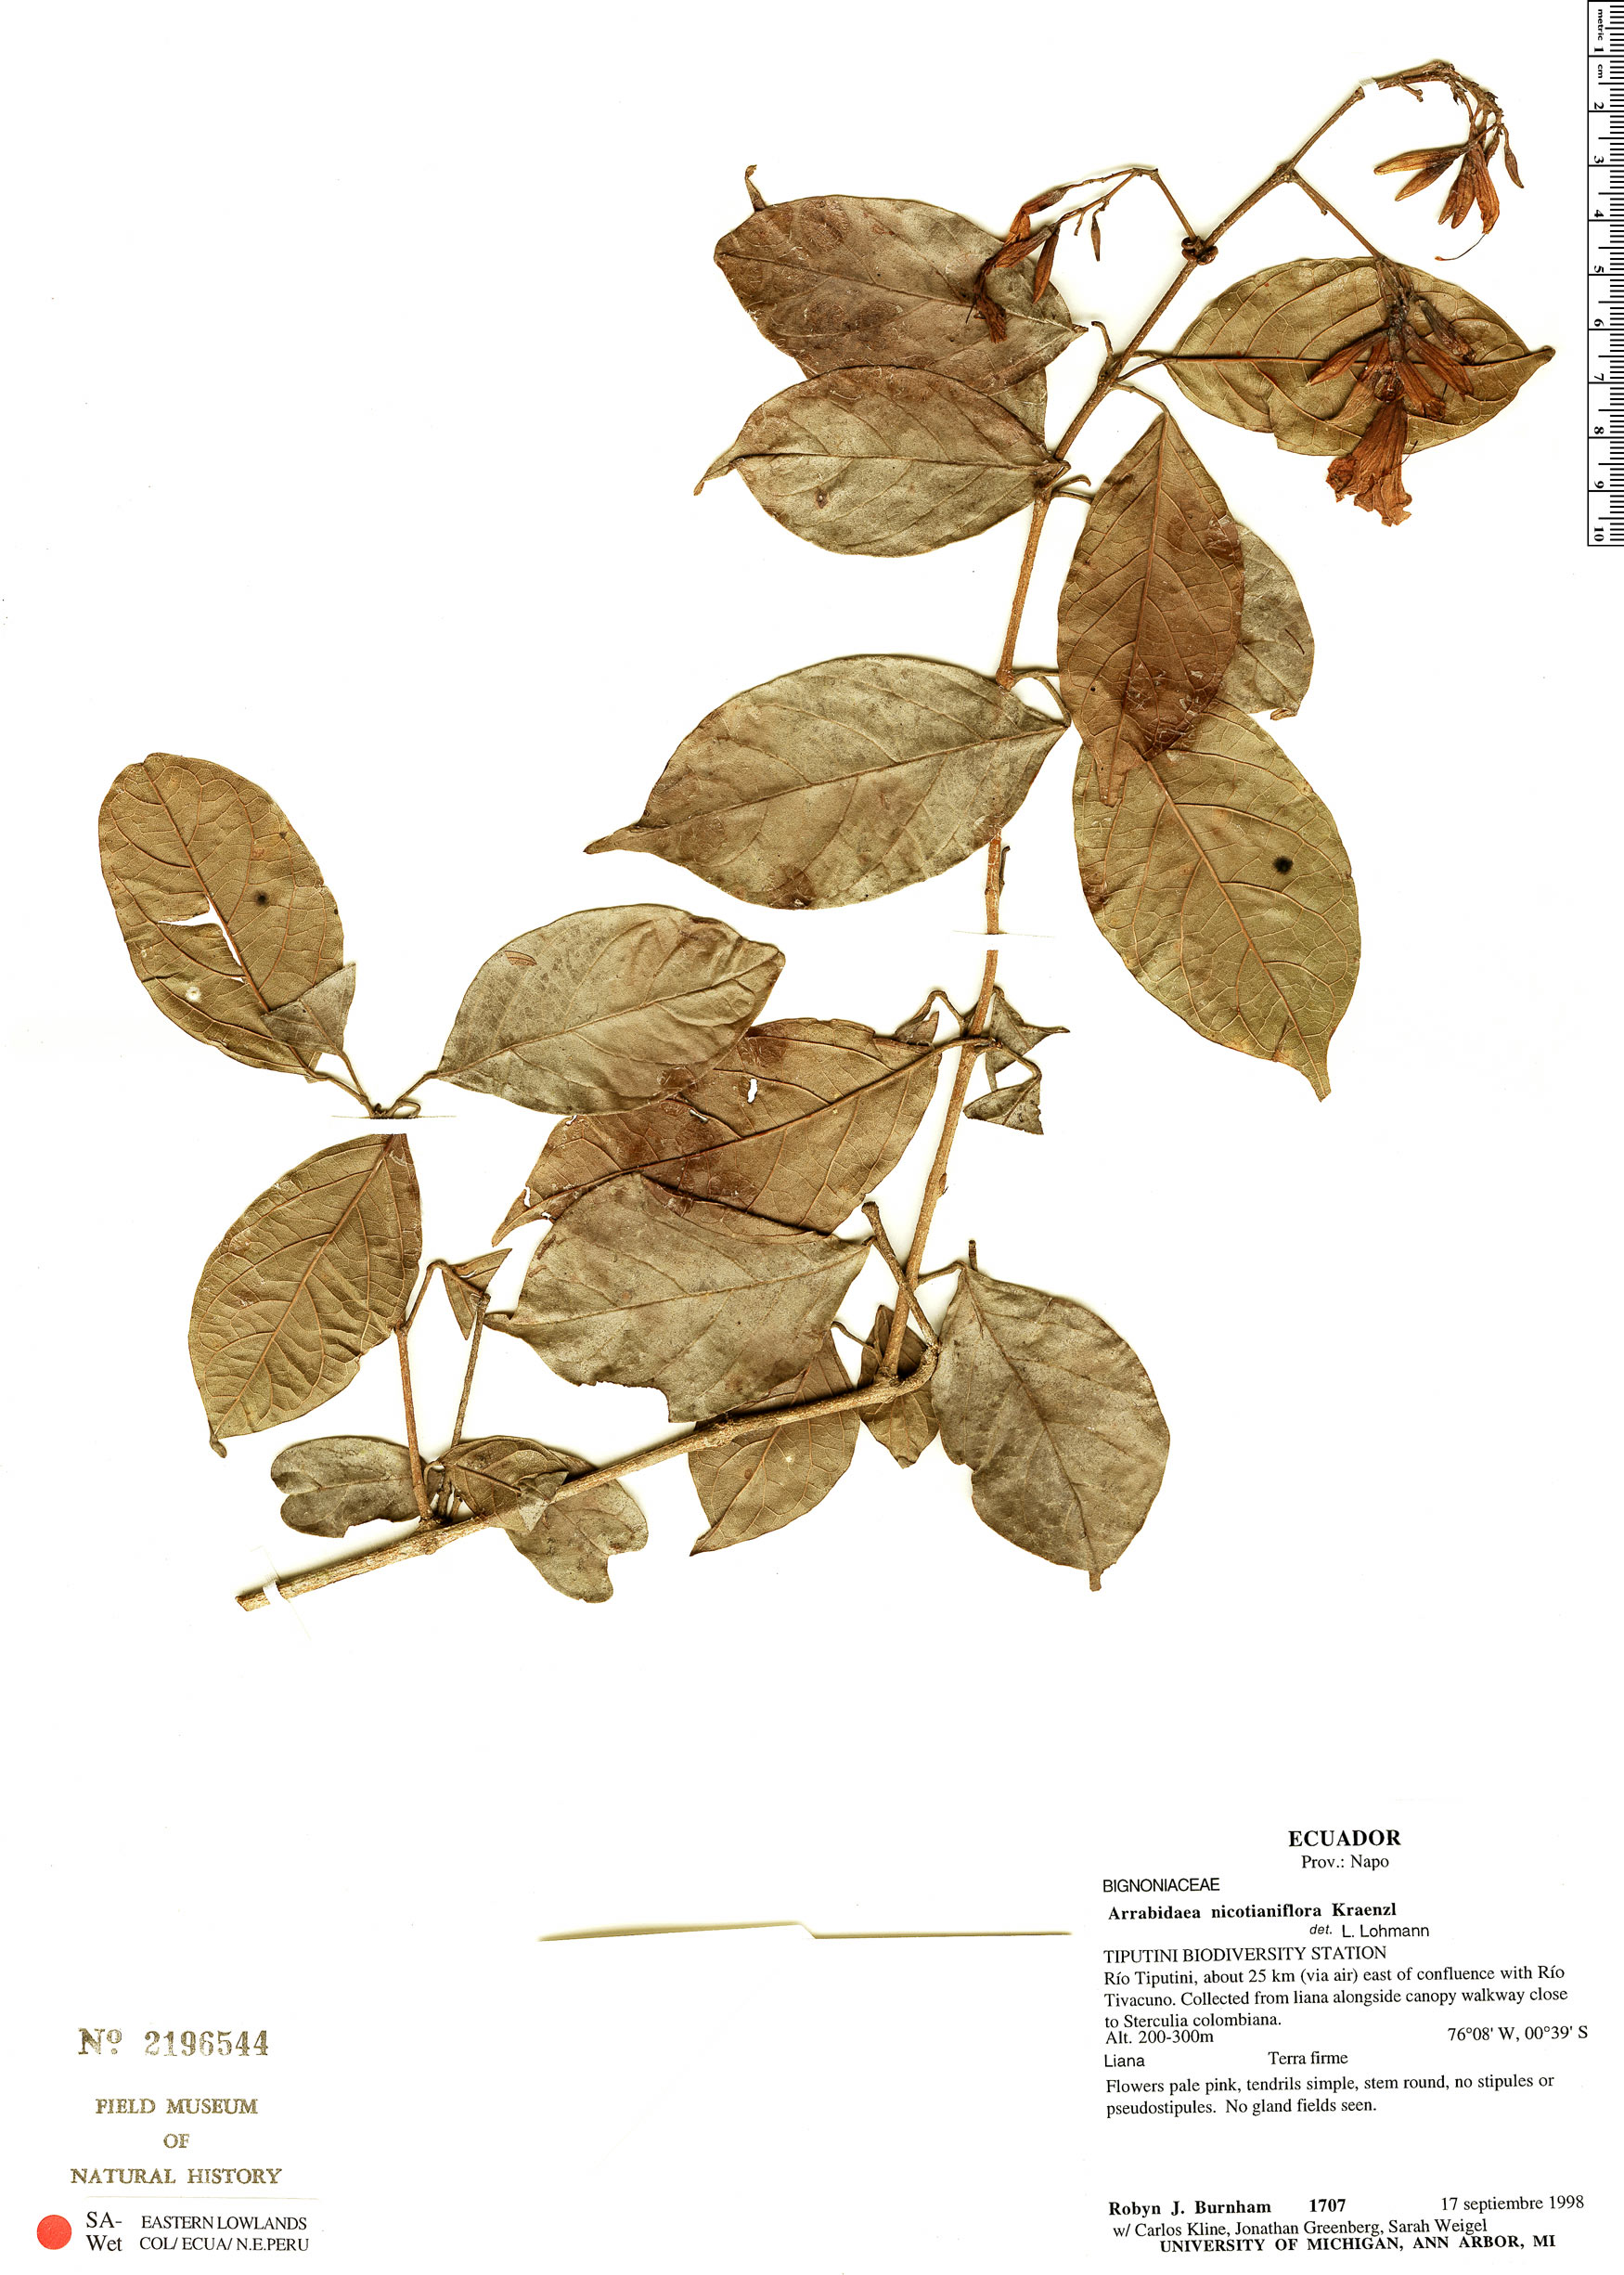 Arrabidaea nicotianiflora image